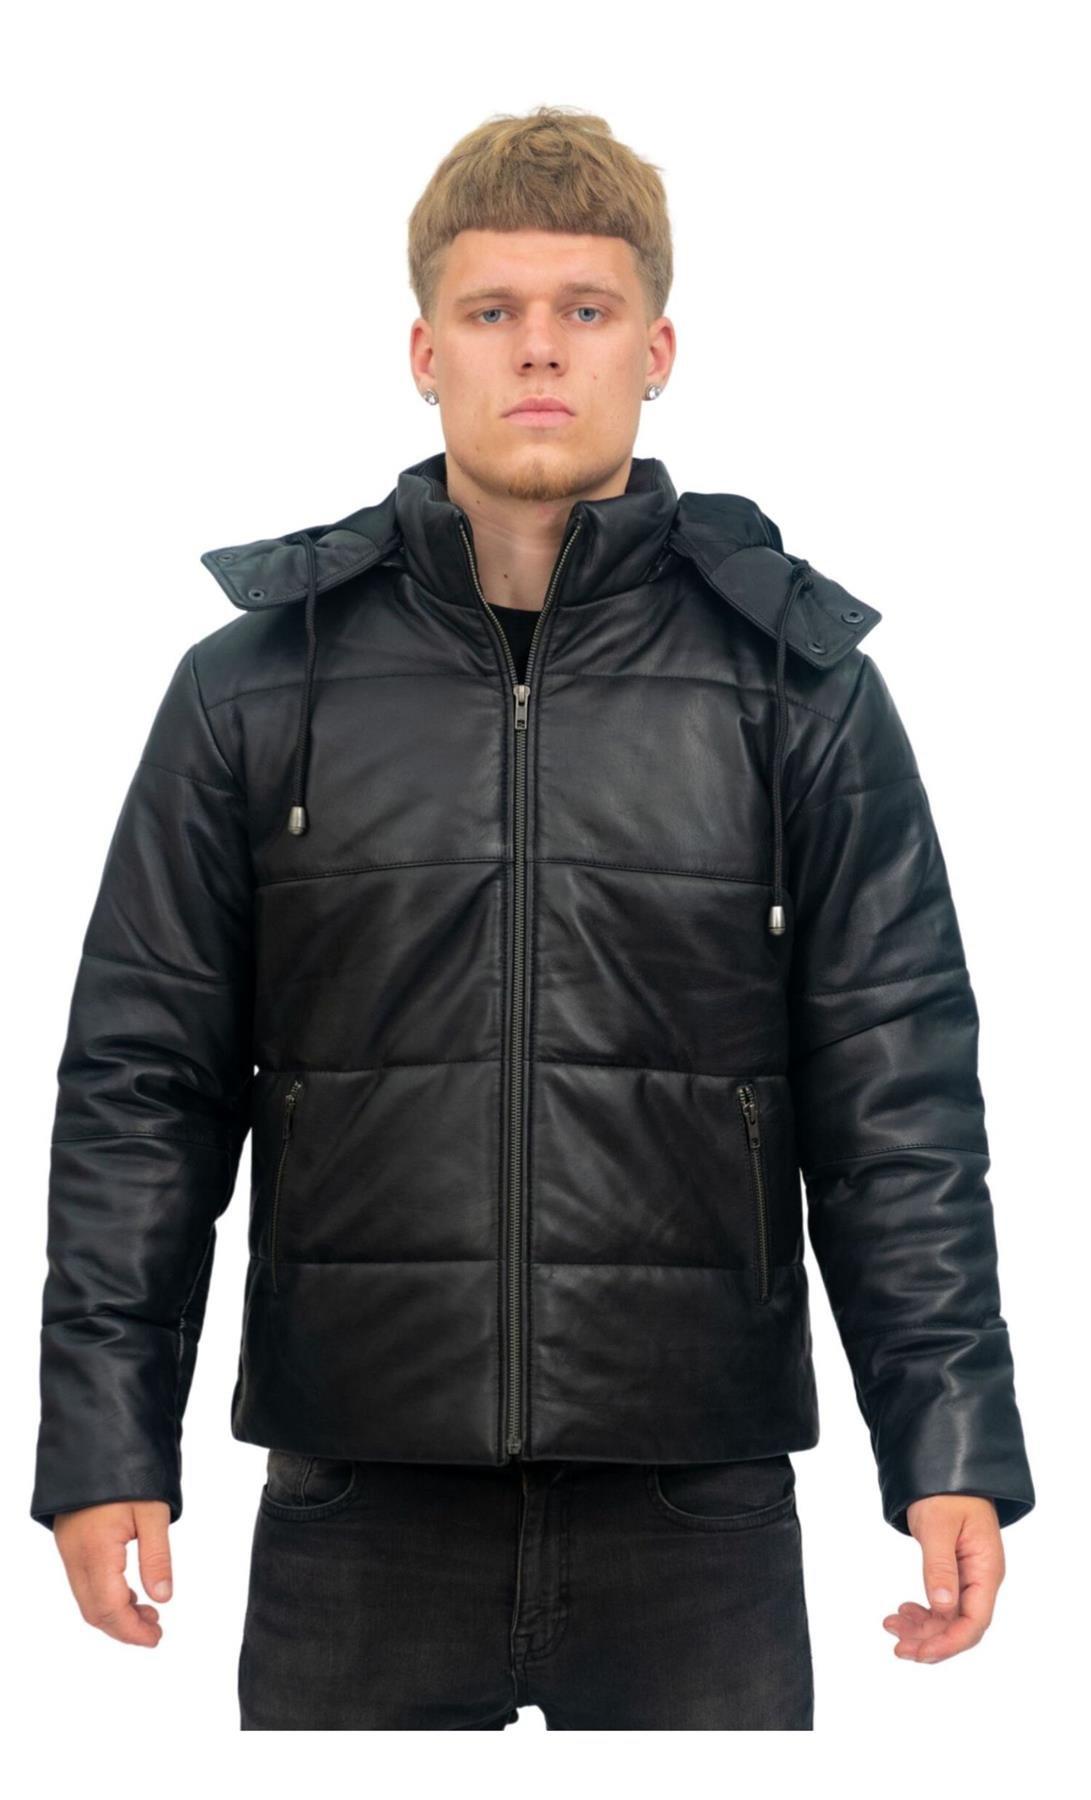 Кожаный бомбер-пуховик-Аугсбург Infinity Leather, черный куртка стеганая утепленная с капюшоном 16 лет 162 см черный